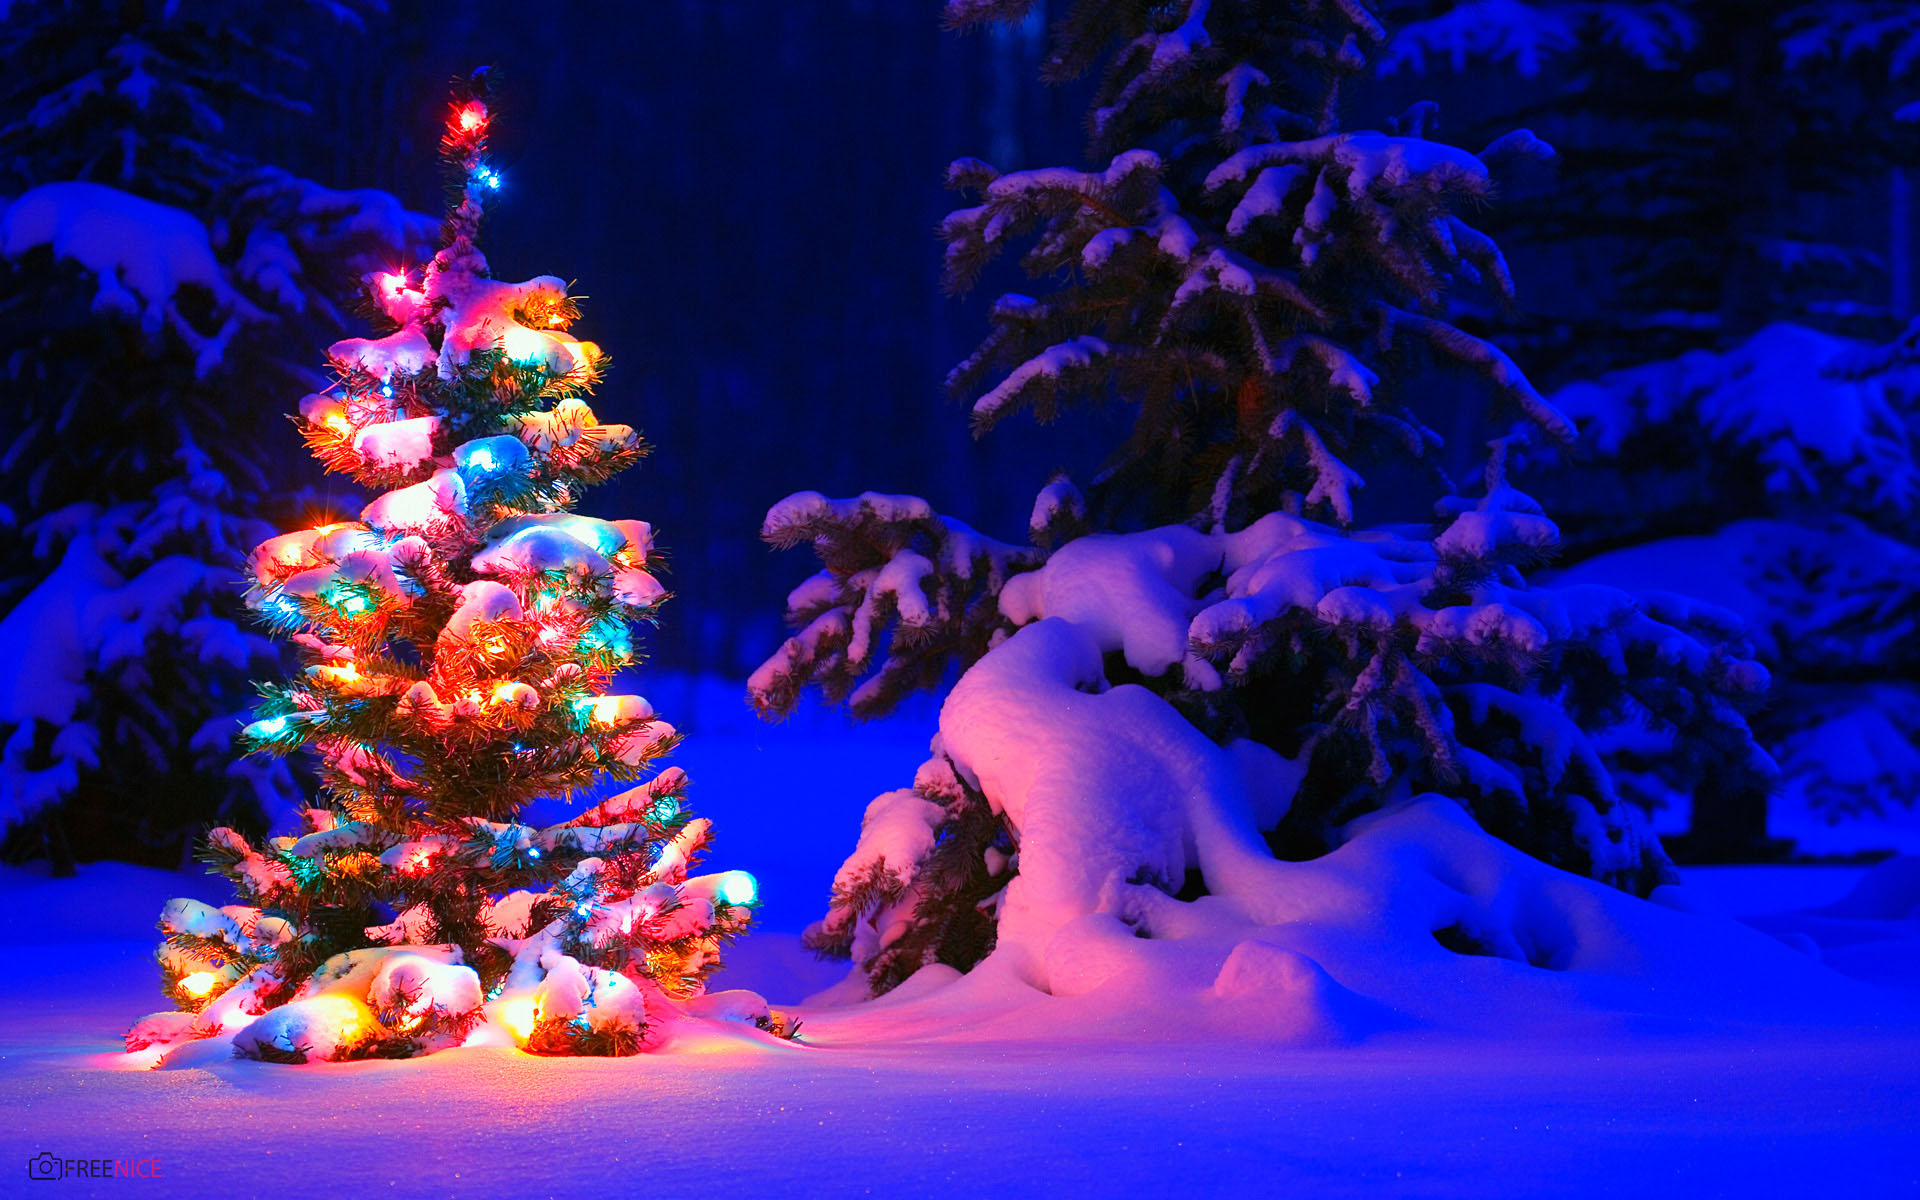 Cây thông Noel - Ngày Giáng sinh không thể thiếu được cây thông Noel, nó là bài toán giải trí cho cả gia đình. Hãy cùng xây dựng một cây thông đẹp lung linh để cùng tận hưởng không khí Giáng sinh ấm áp và đầy niềm vui.